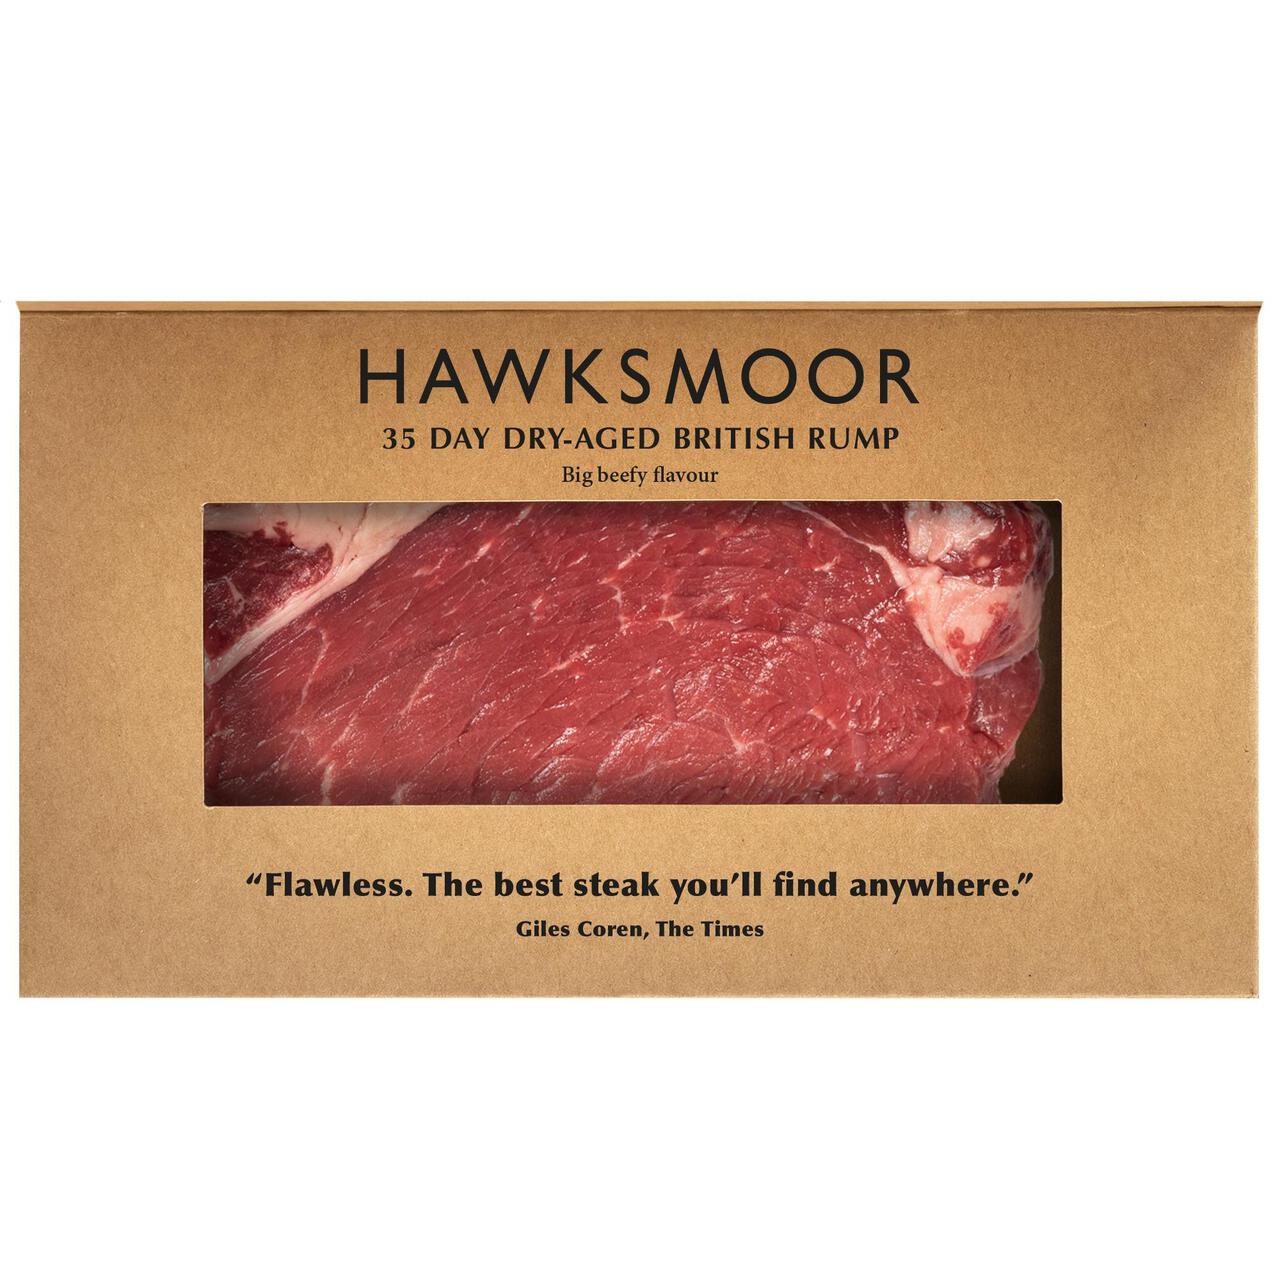 HAWKSMOOR 35 Day Dry-Aged British Rump Steak 300g